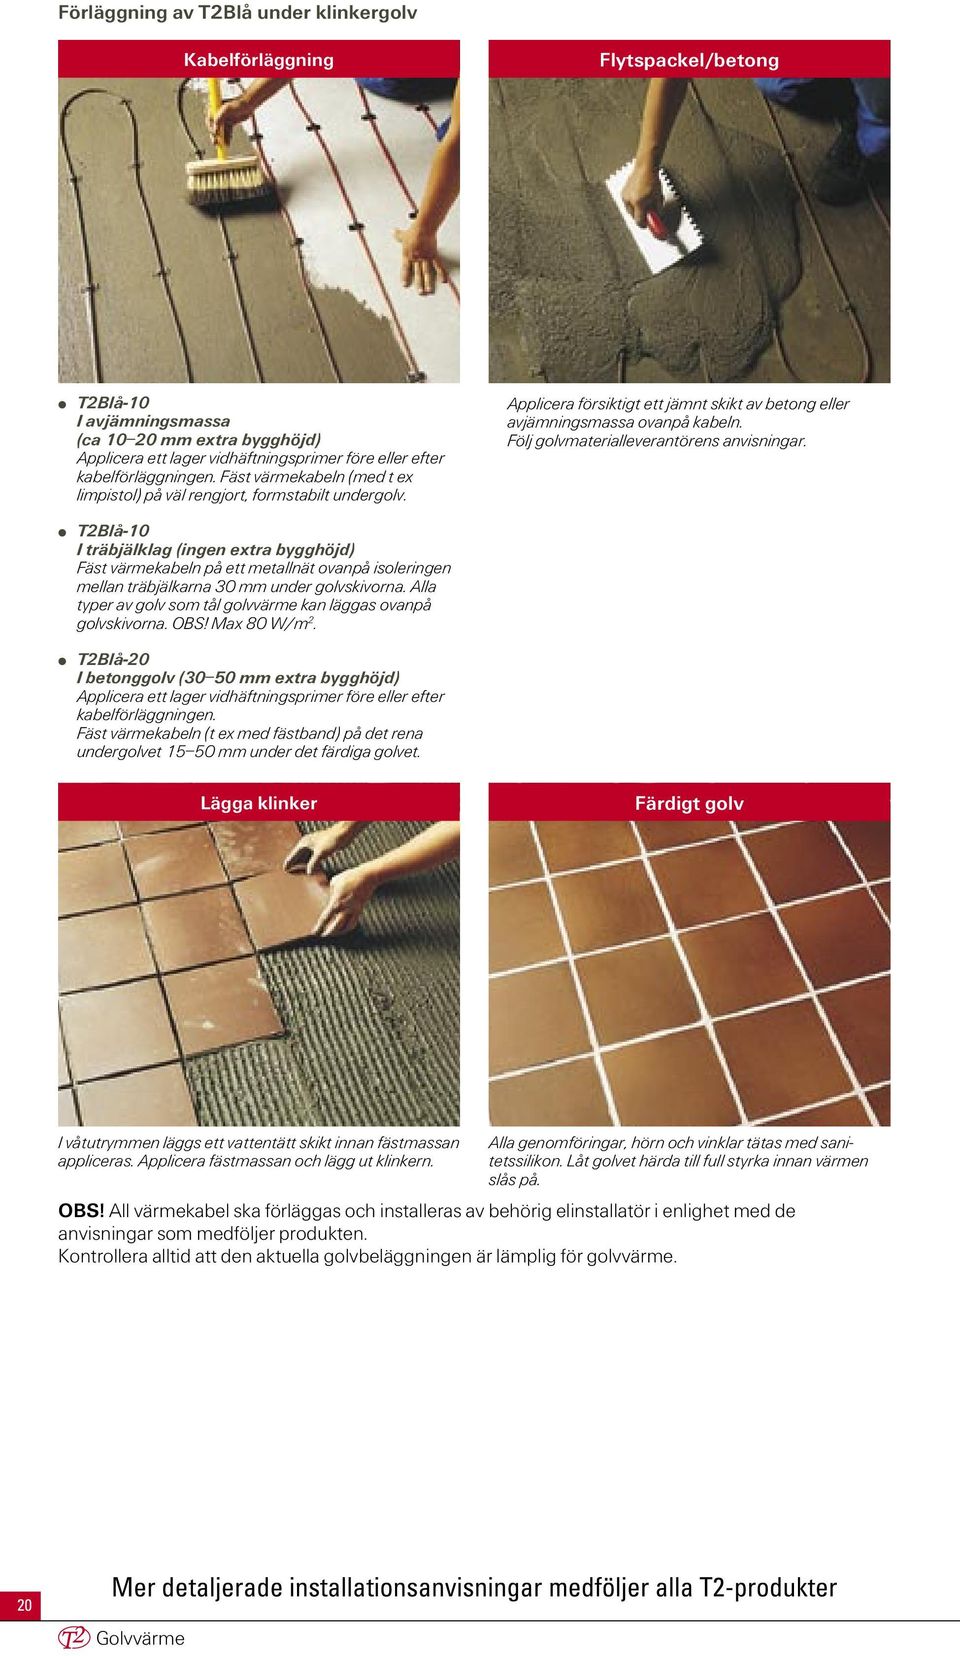 Följ golvmaterialleverantörens anvisningar. T2Blå-10 I träbjälklag (ingen extra bygghöjd) Fäst värmekabeln på ett metallnät ovanpå isoleringen mellan träbjälkarna 30 mm under golvskivorna.